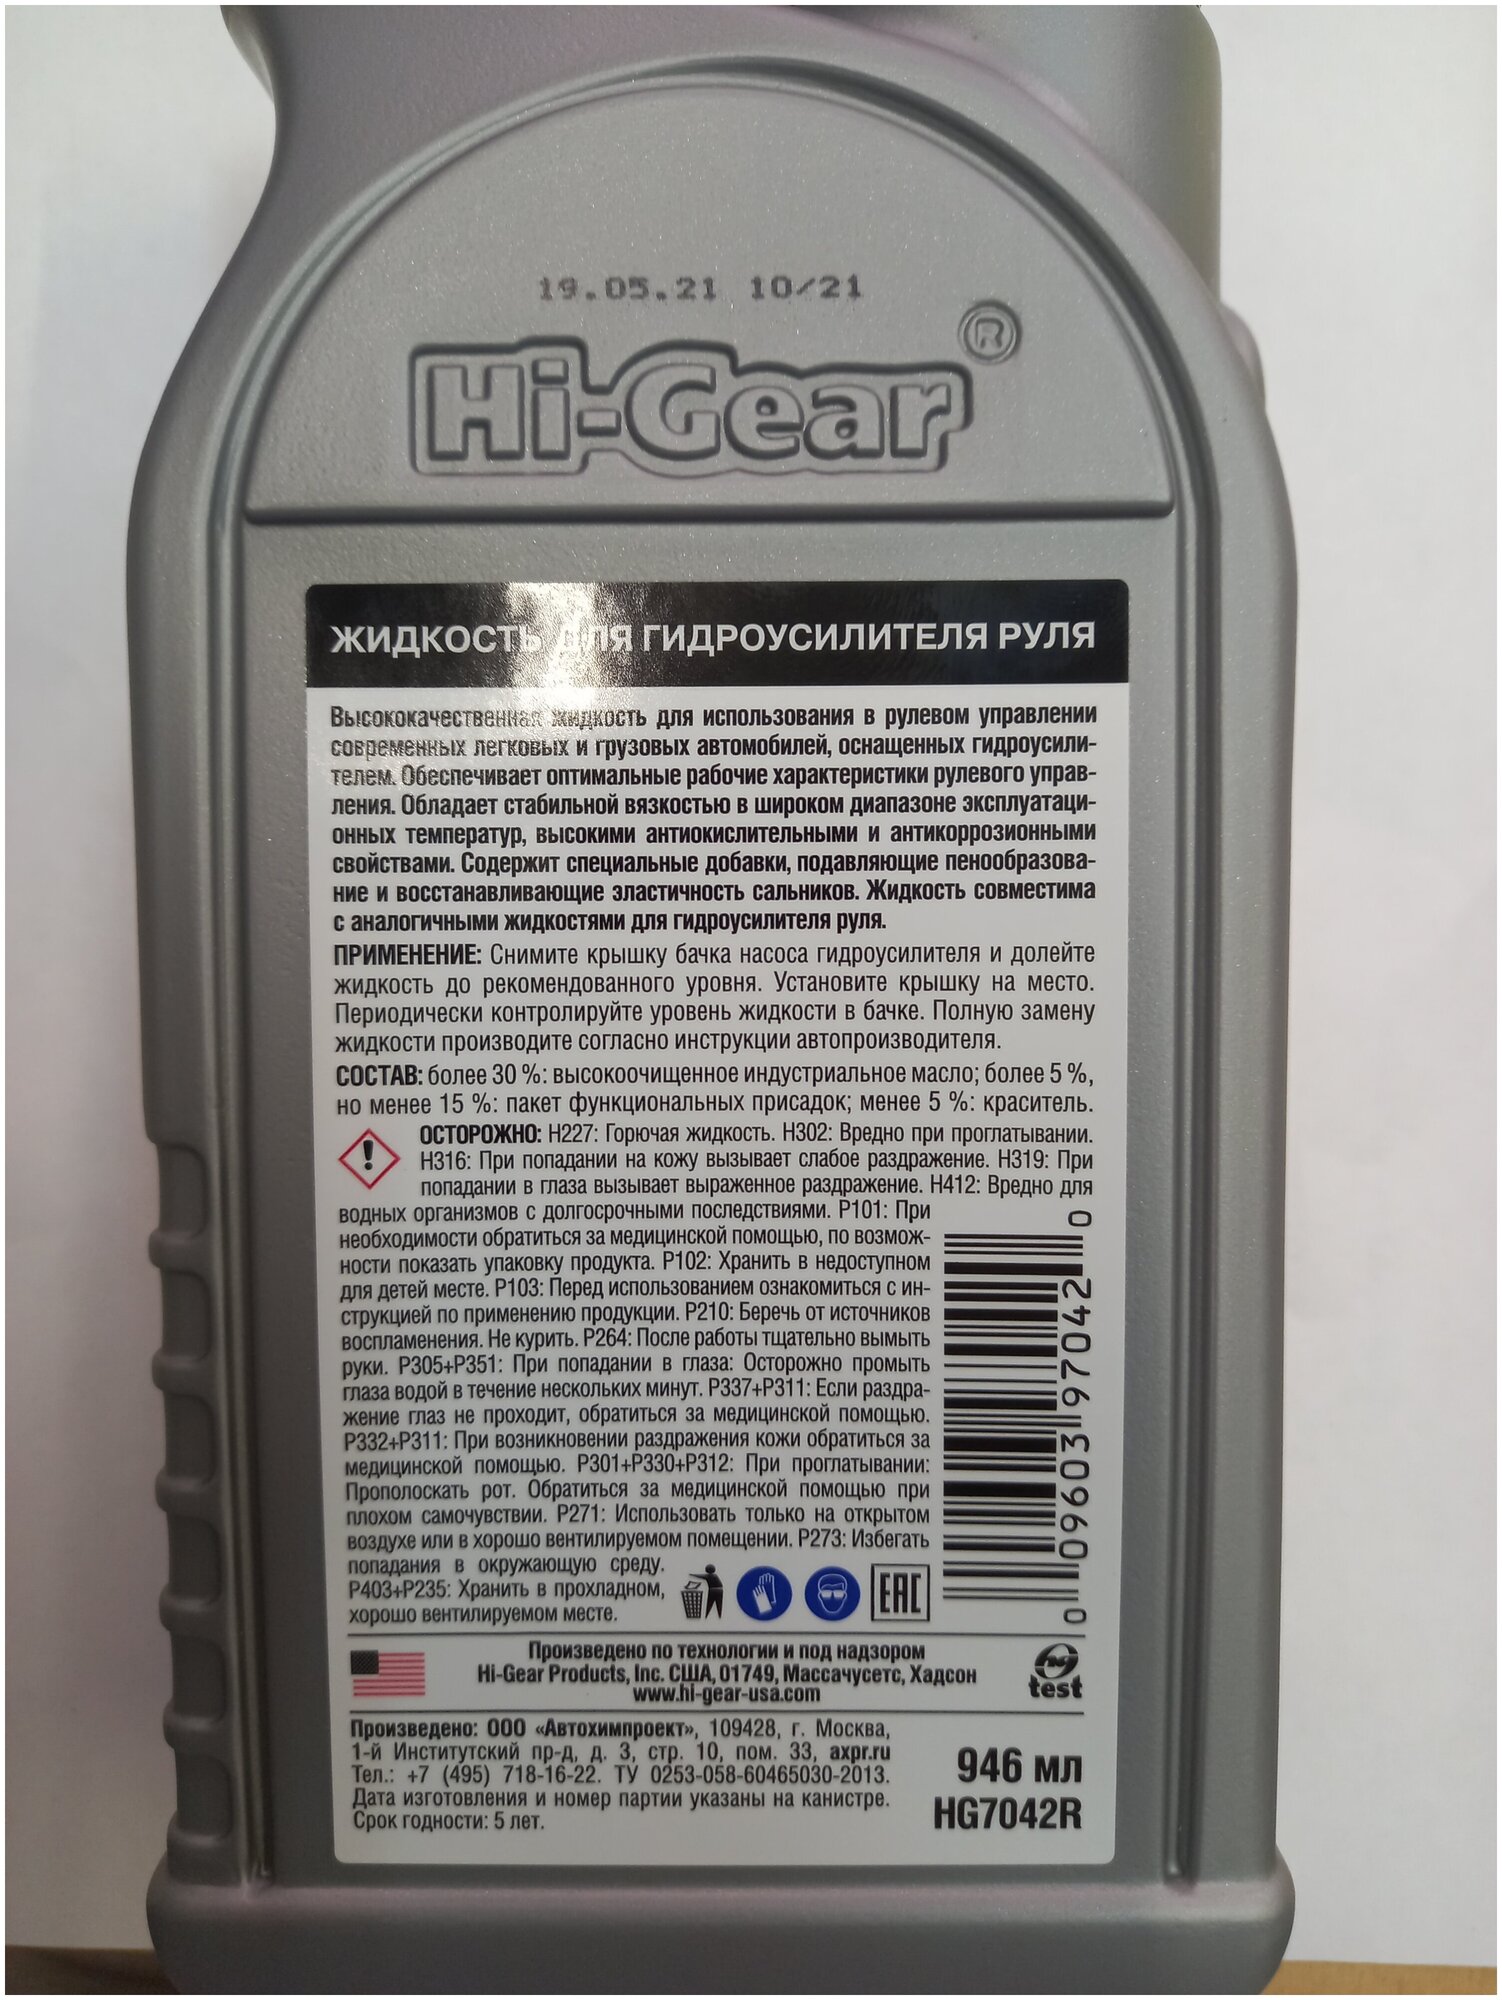 Жидкость для гидроусилителя универсальная HI-GEAR 946 мл HG7042R